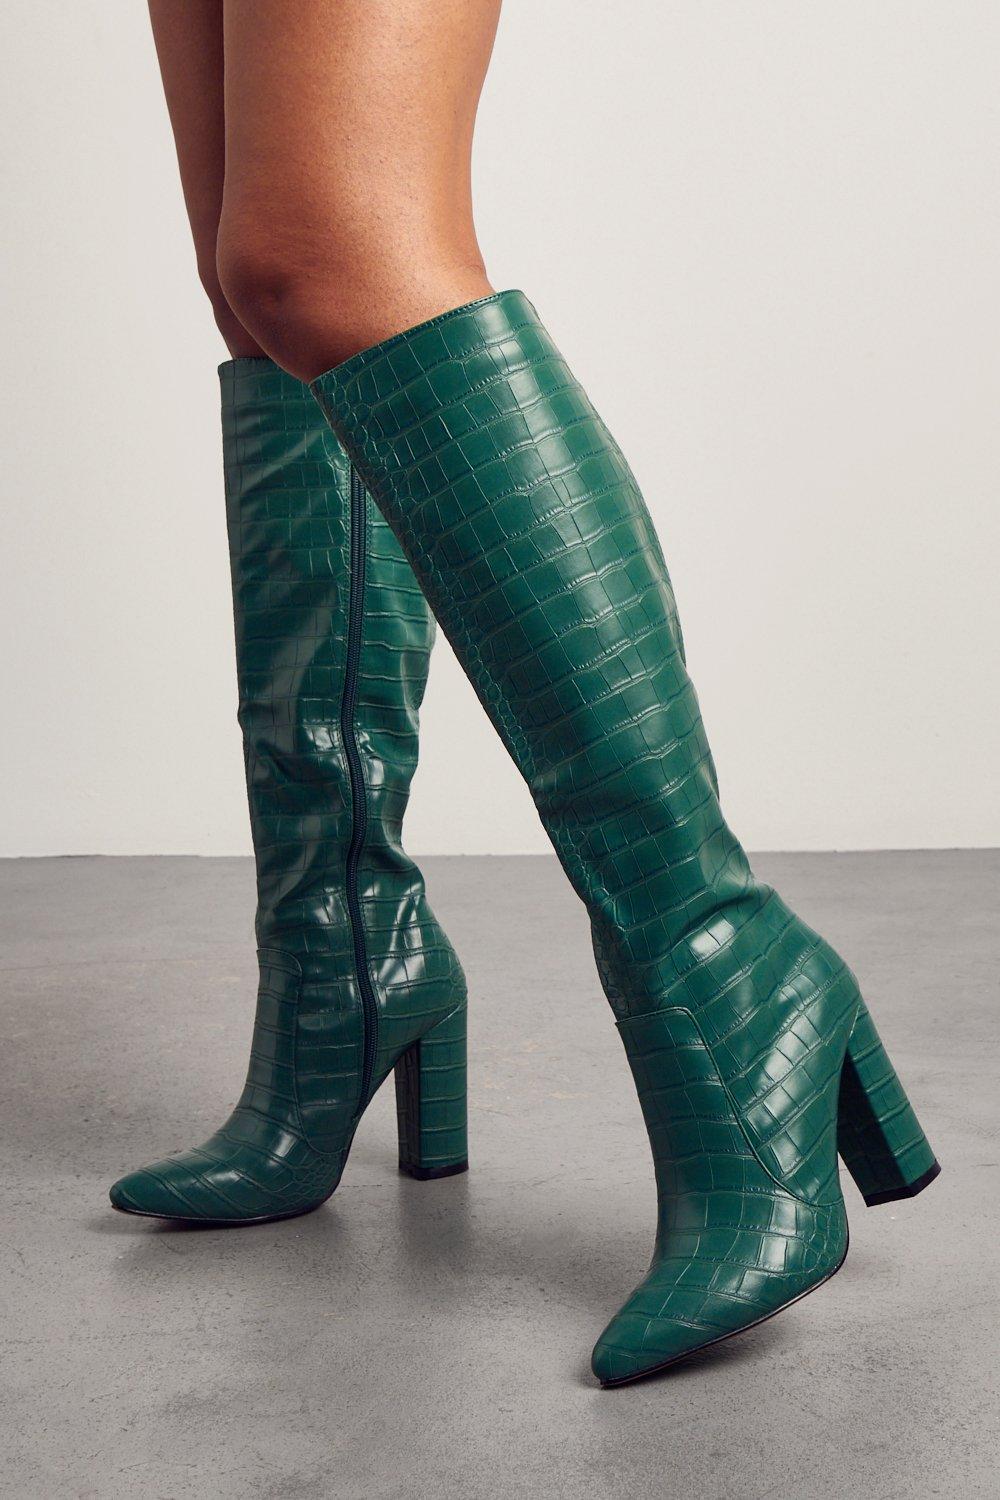 womens croc knee high heeled boots - green - 3, green